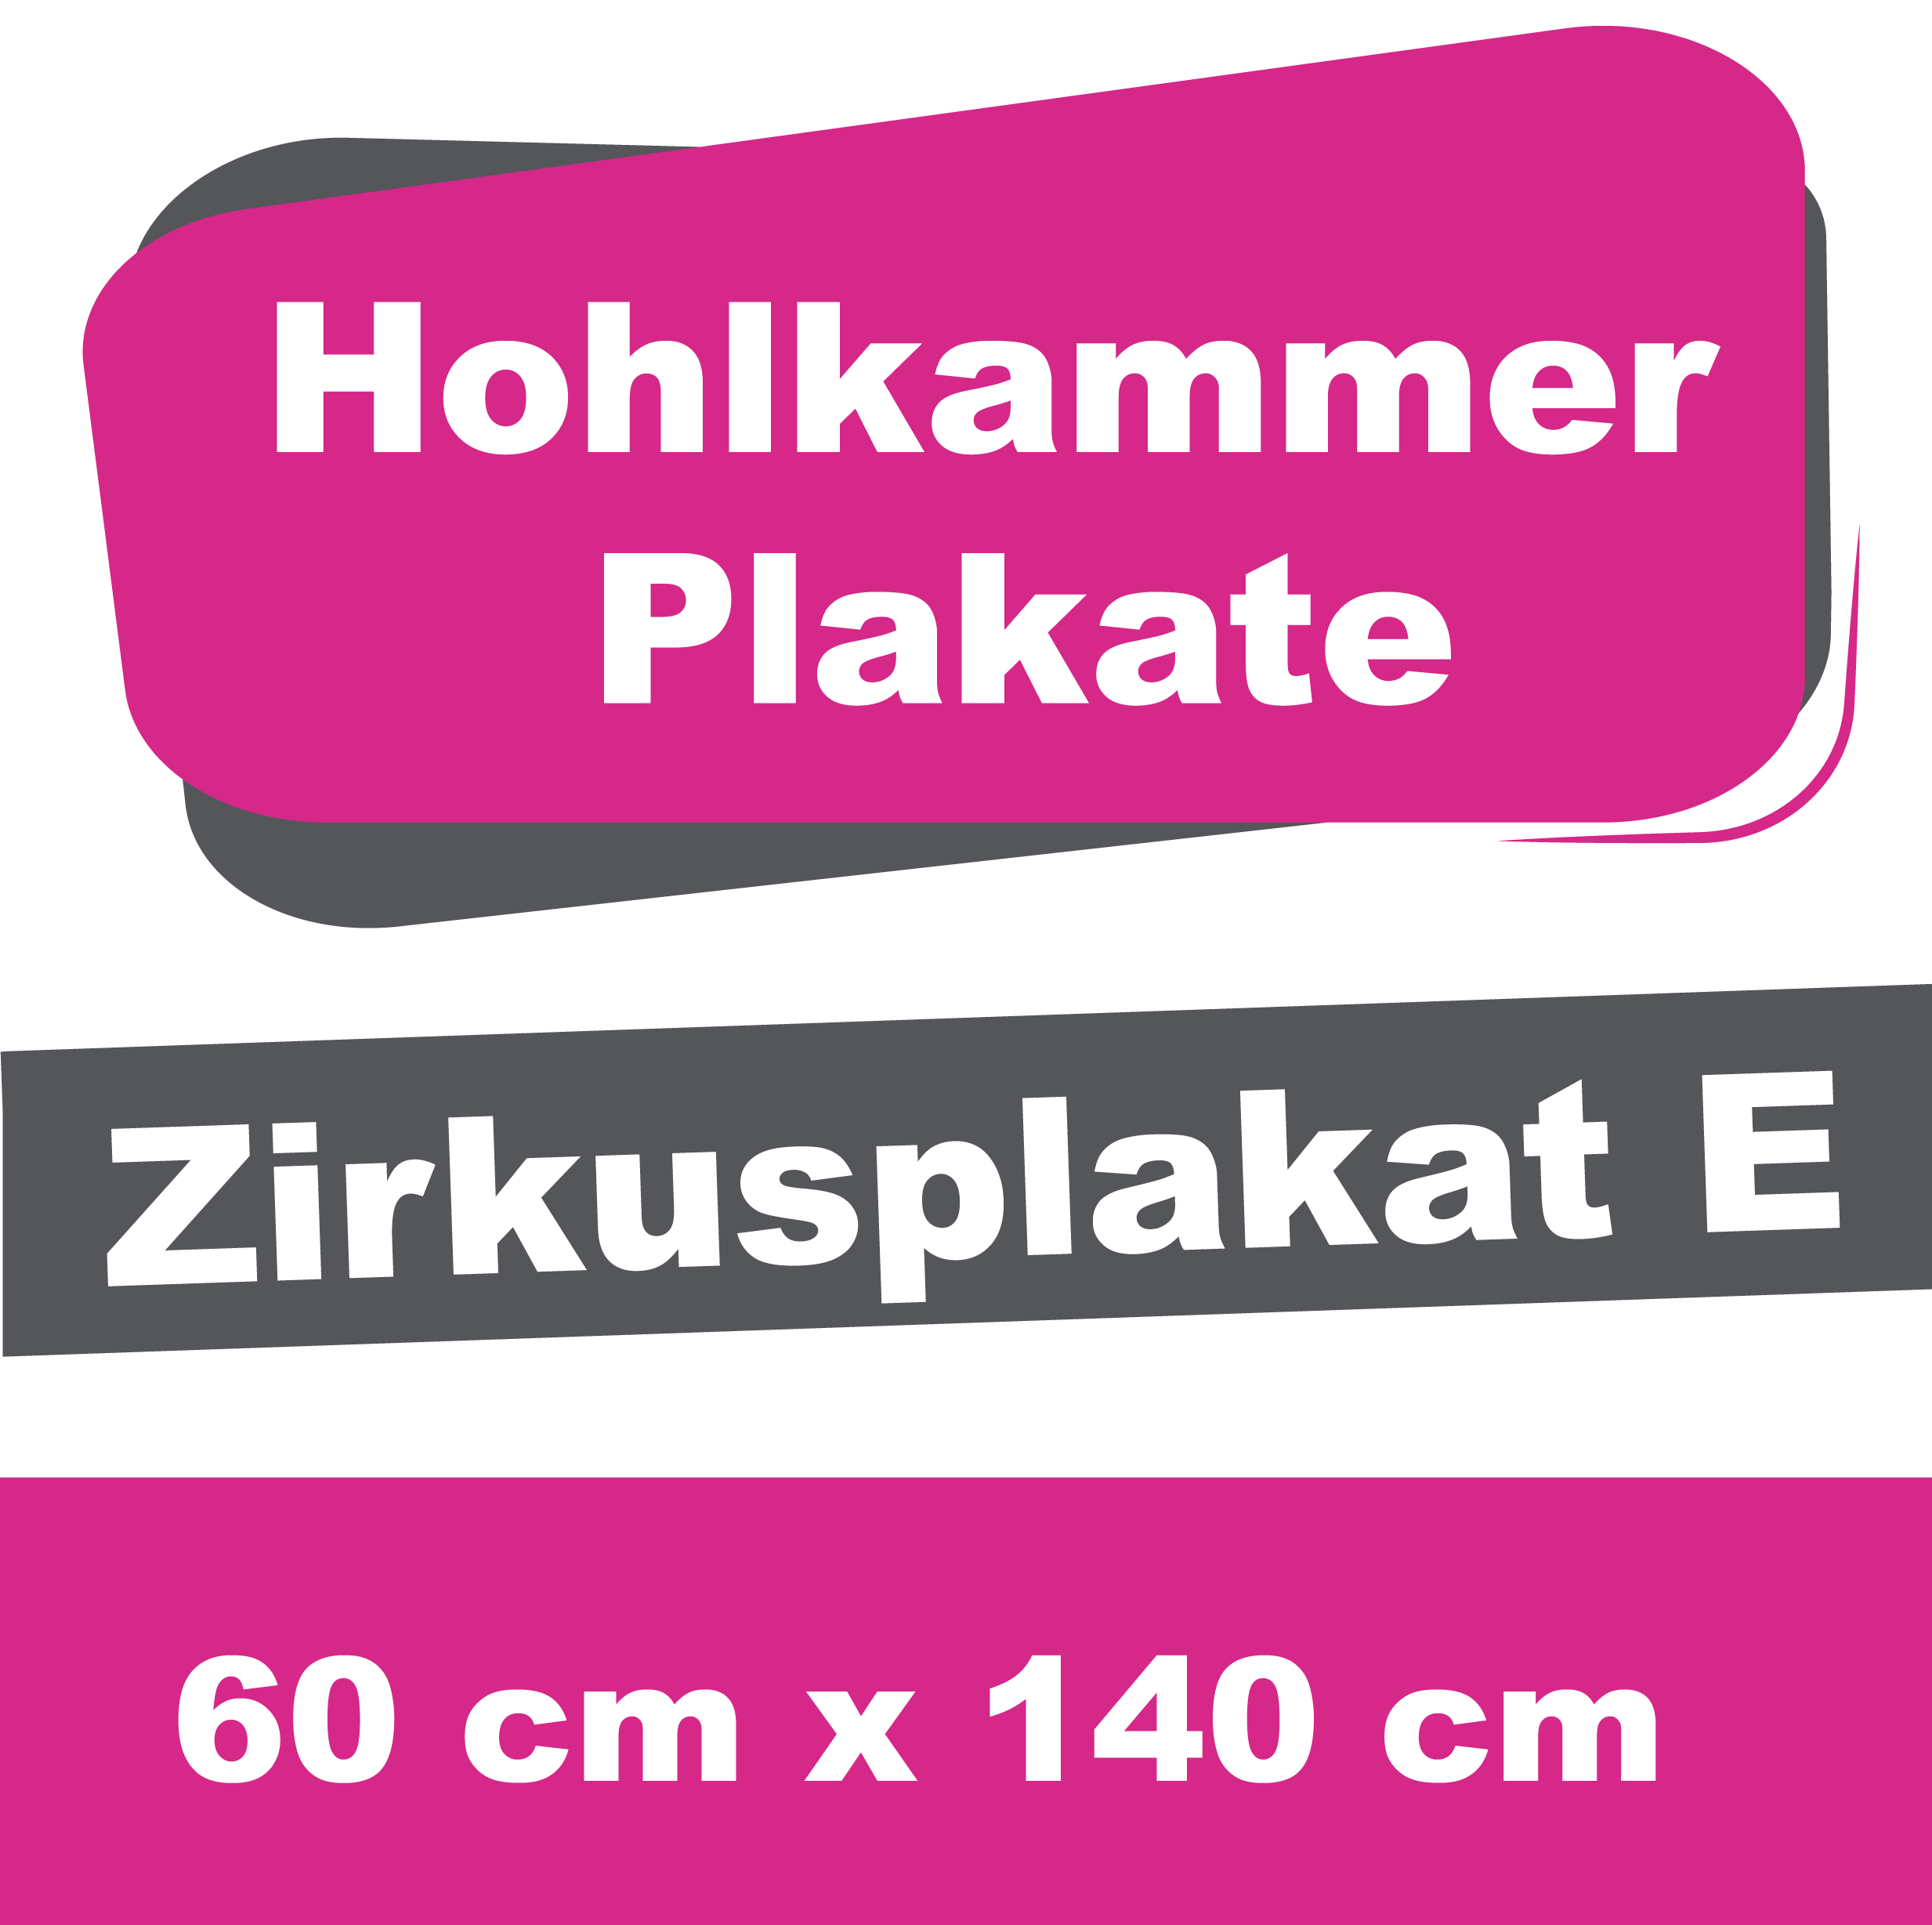 Wahl-/Event-/Zirkusplakat E - Hohlkammerplakate 60 x 140 cm